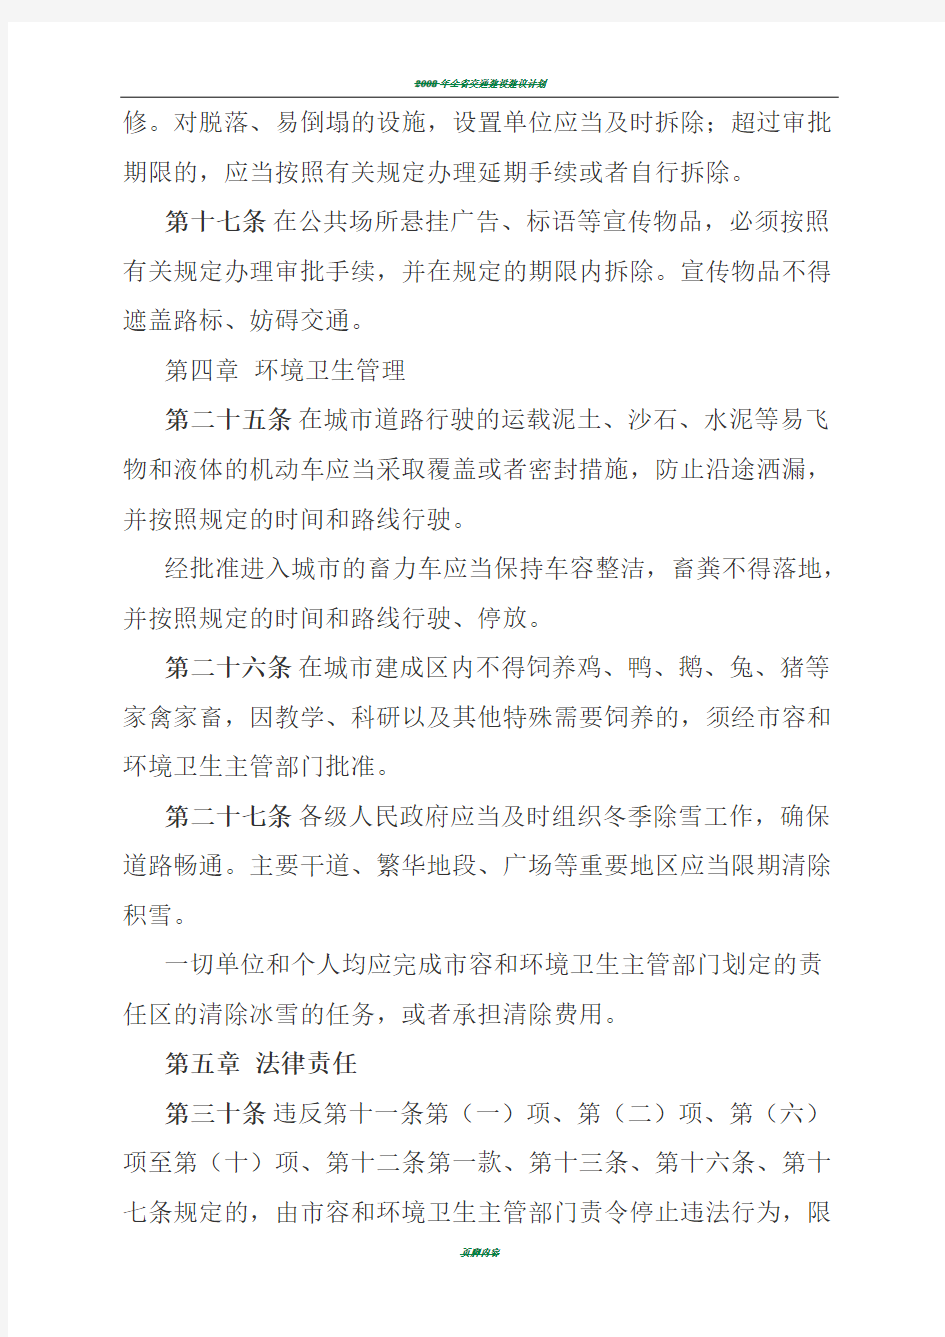 辽宁省城市市容和环境卫生管理规定(修正案)